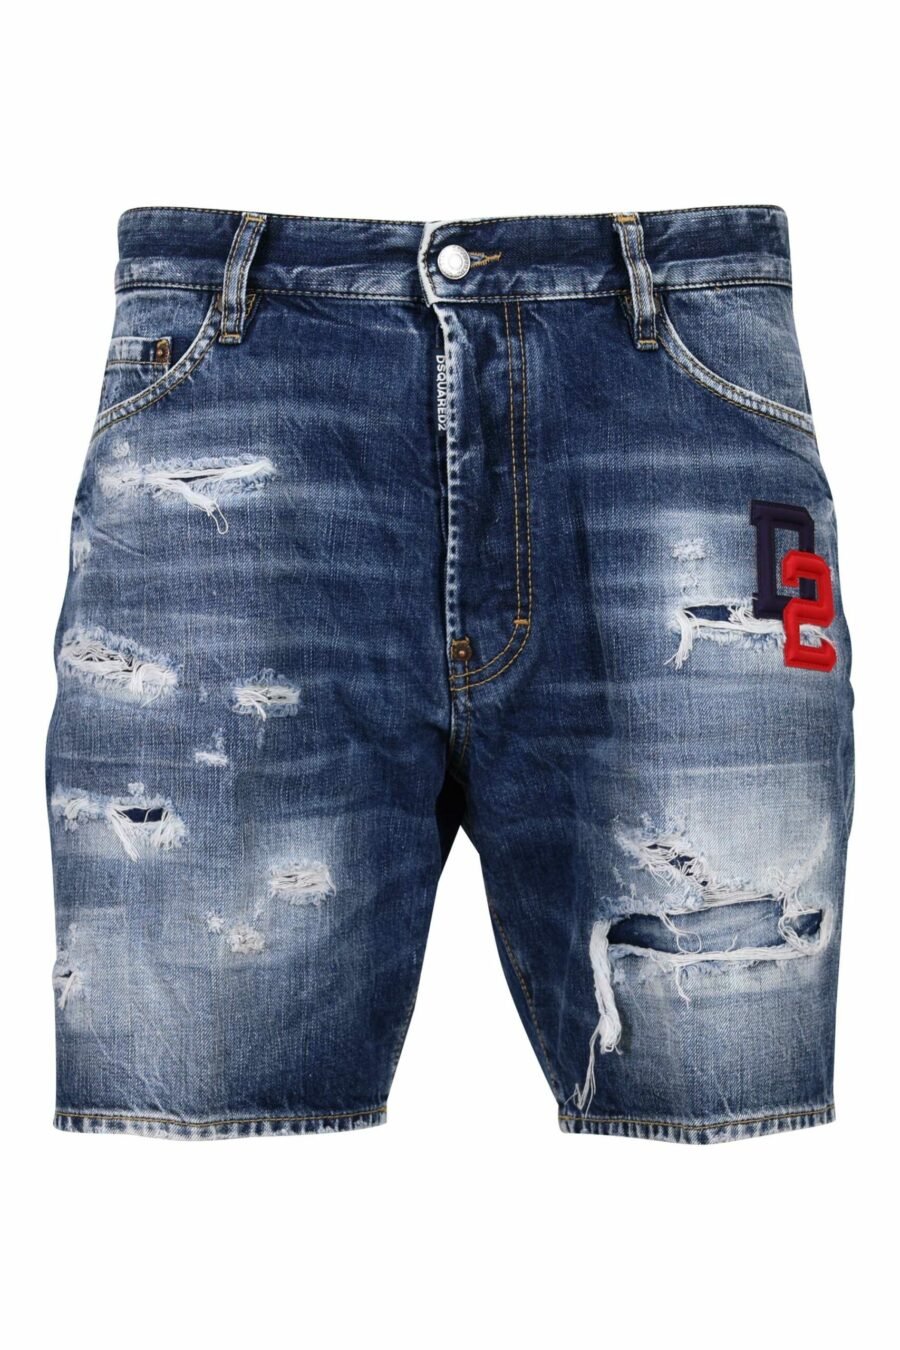 Blue denim shorts "marine short" with red logo - 8054148339920 scaled